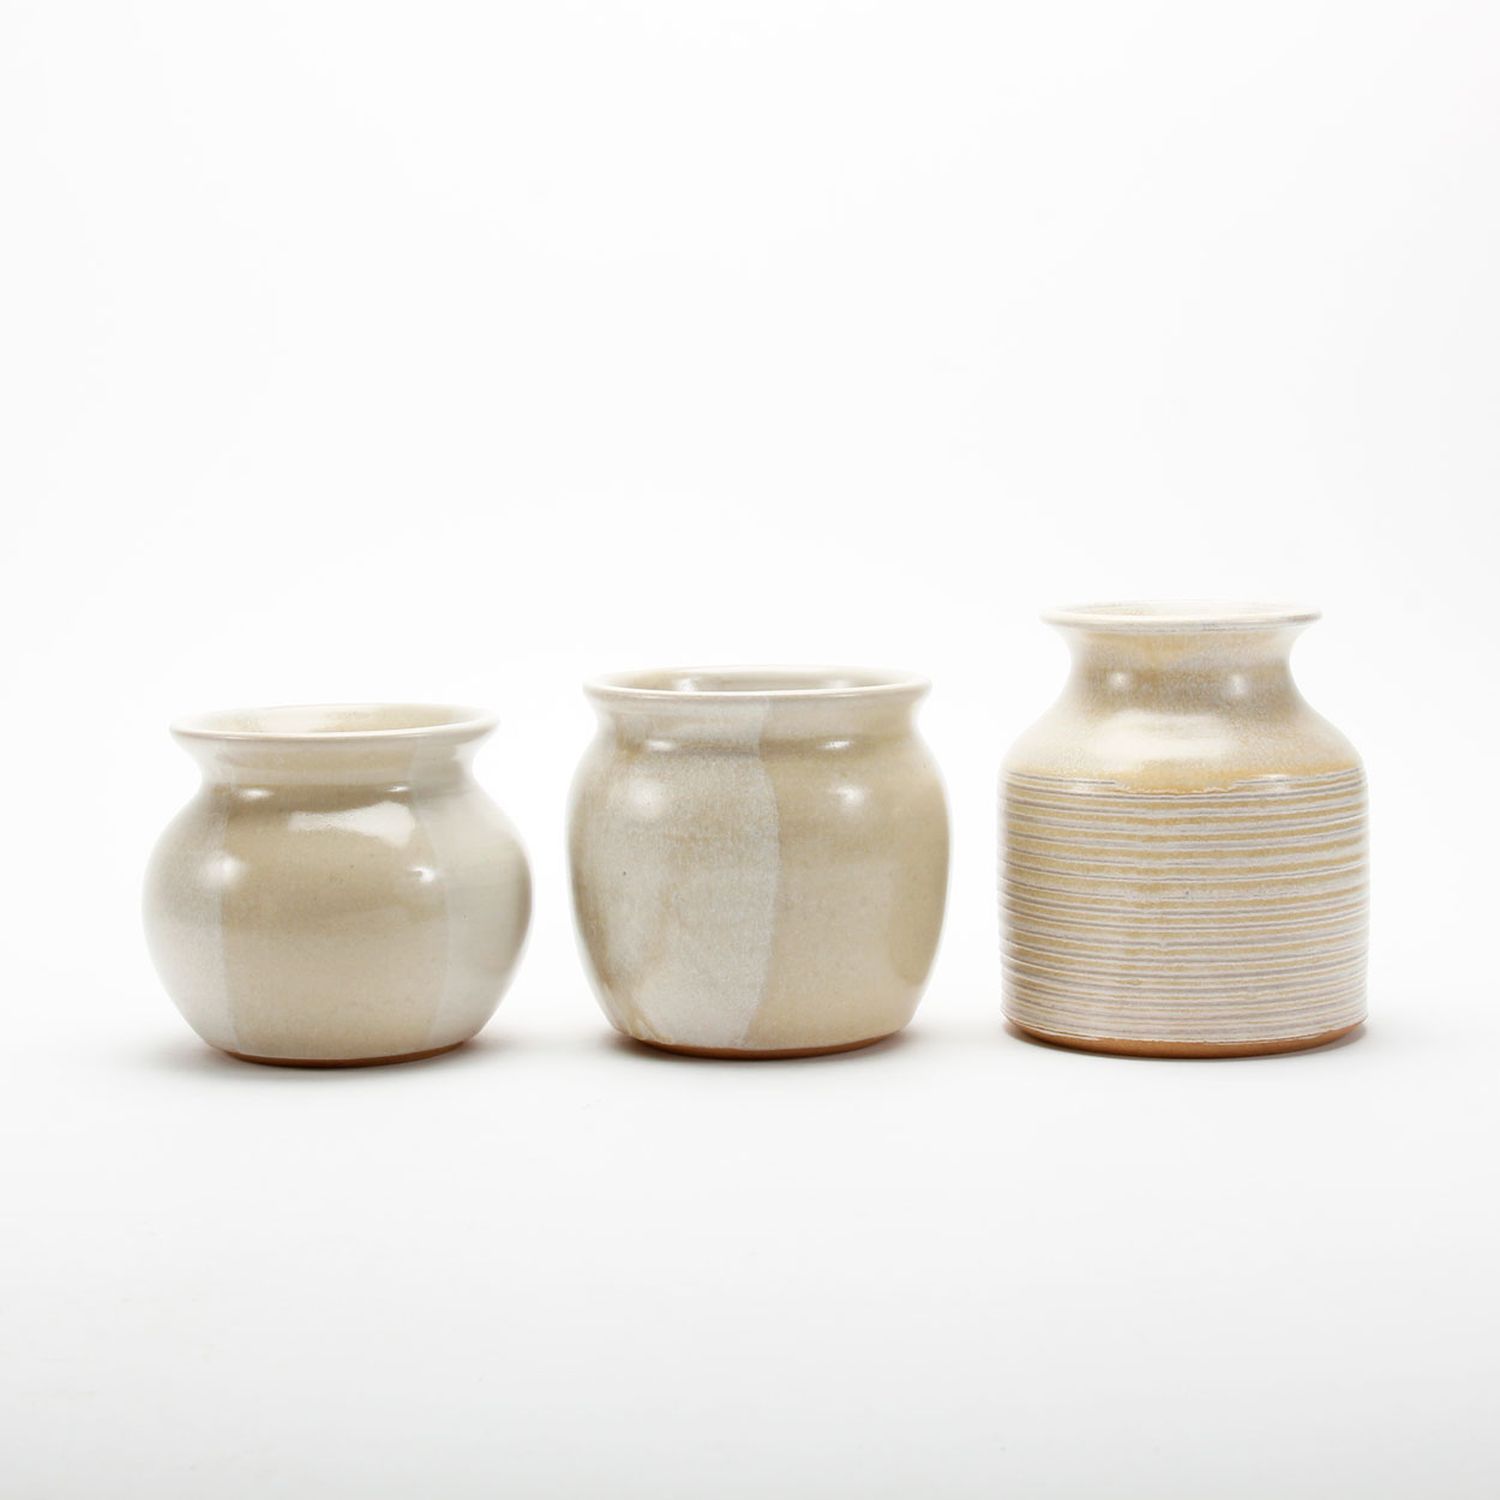 Shiralee Pottery: Medium Round Vase Product Image 2 of 2